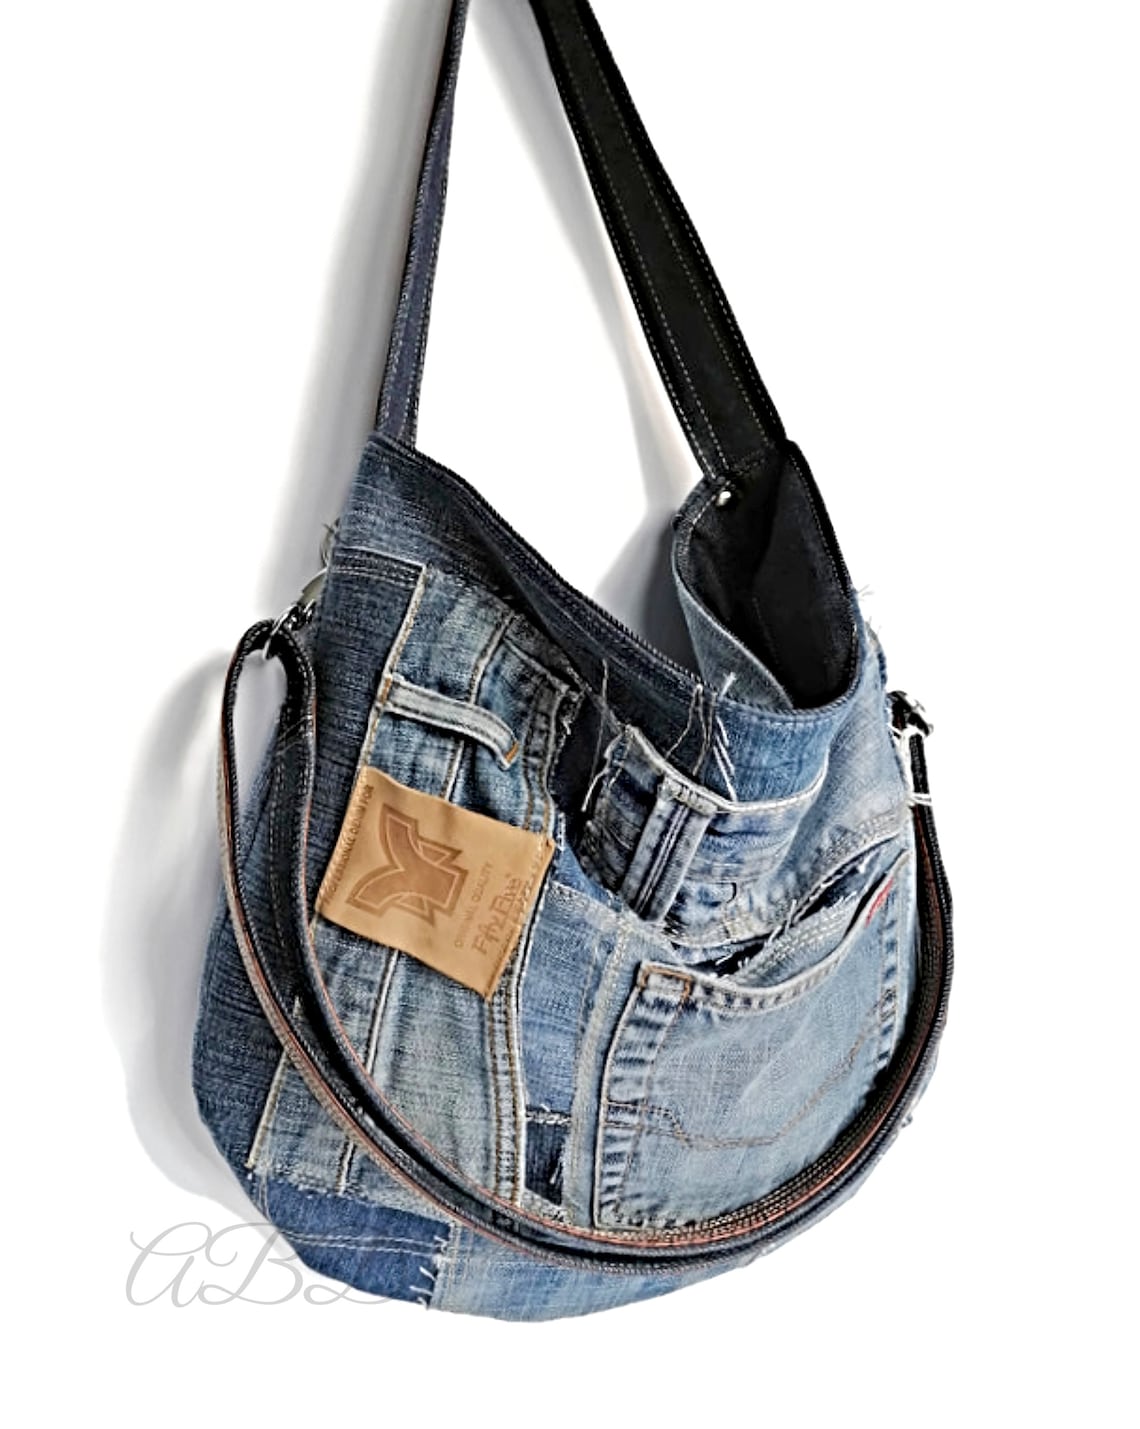 Denim Handbag Denim Purse Bag Recycled Jeans Bag Jeans Purse - Etsy